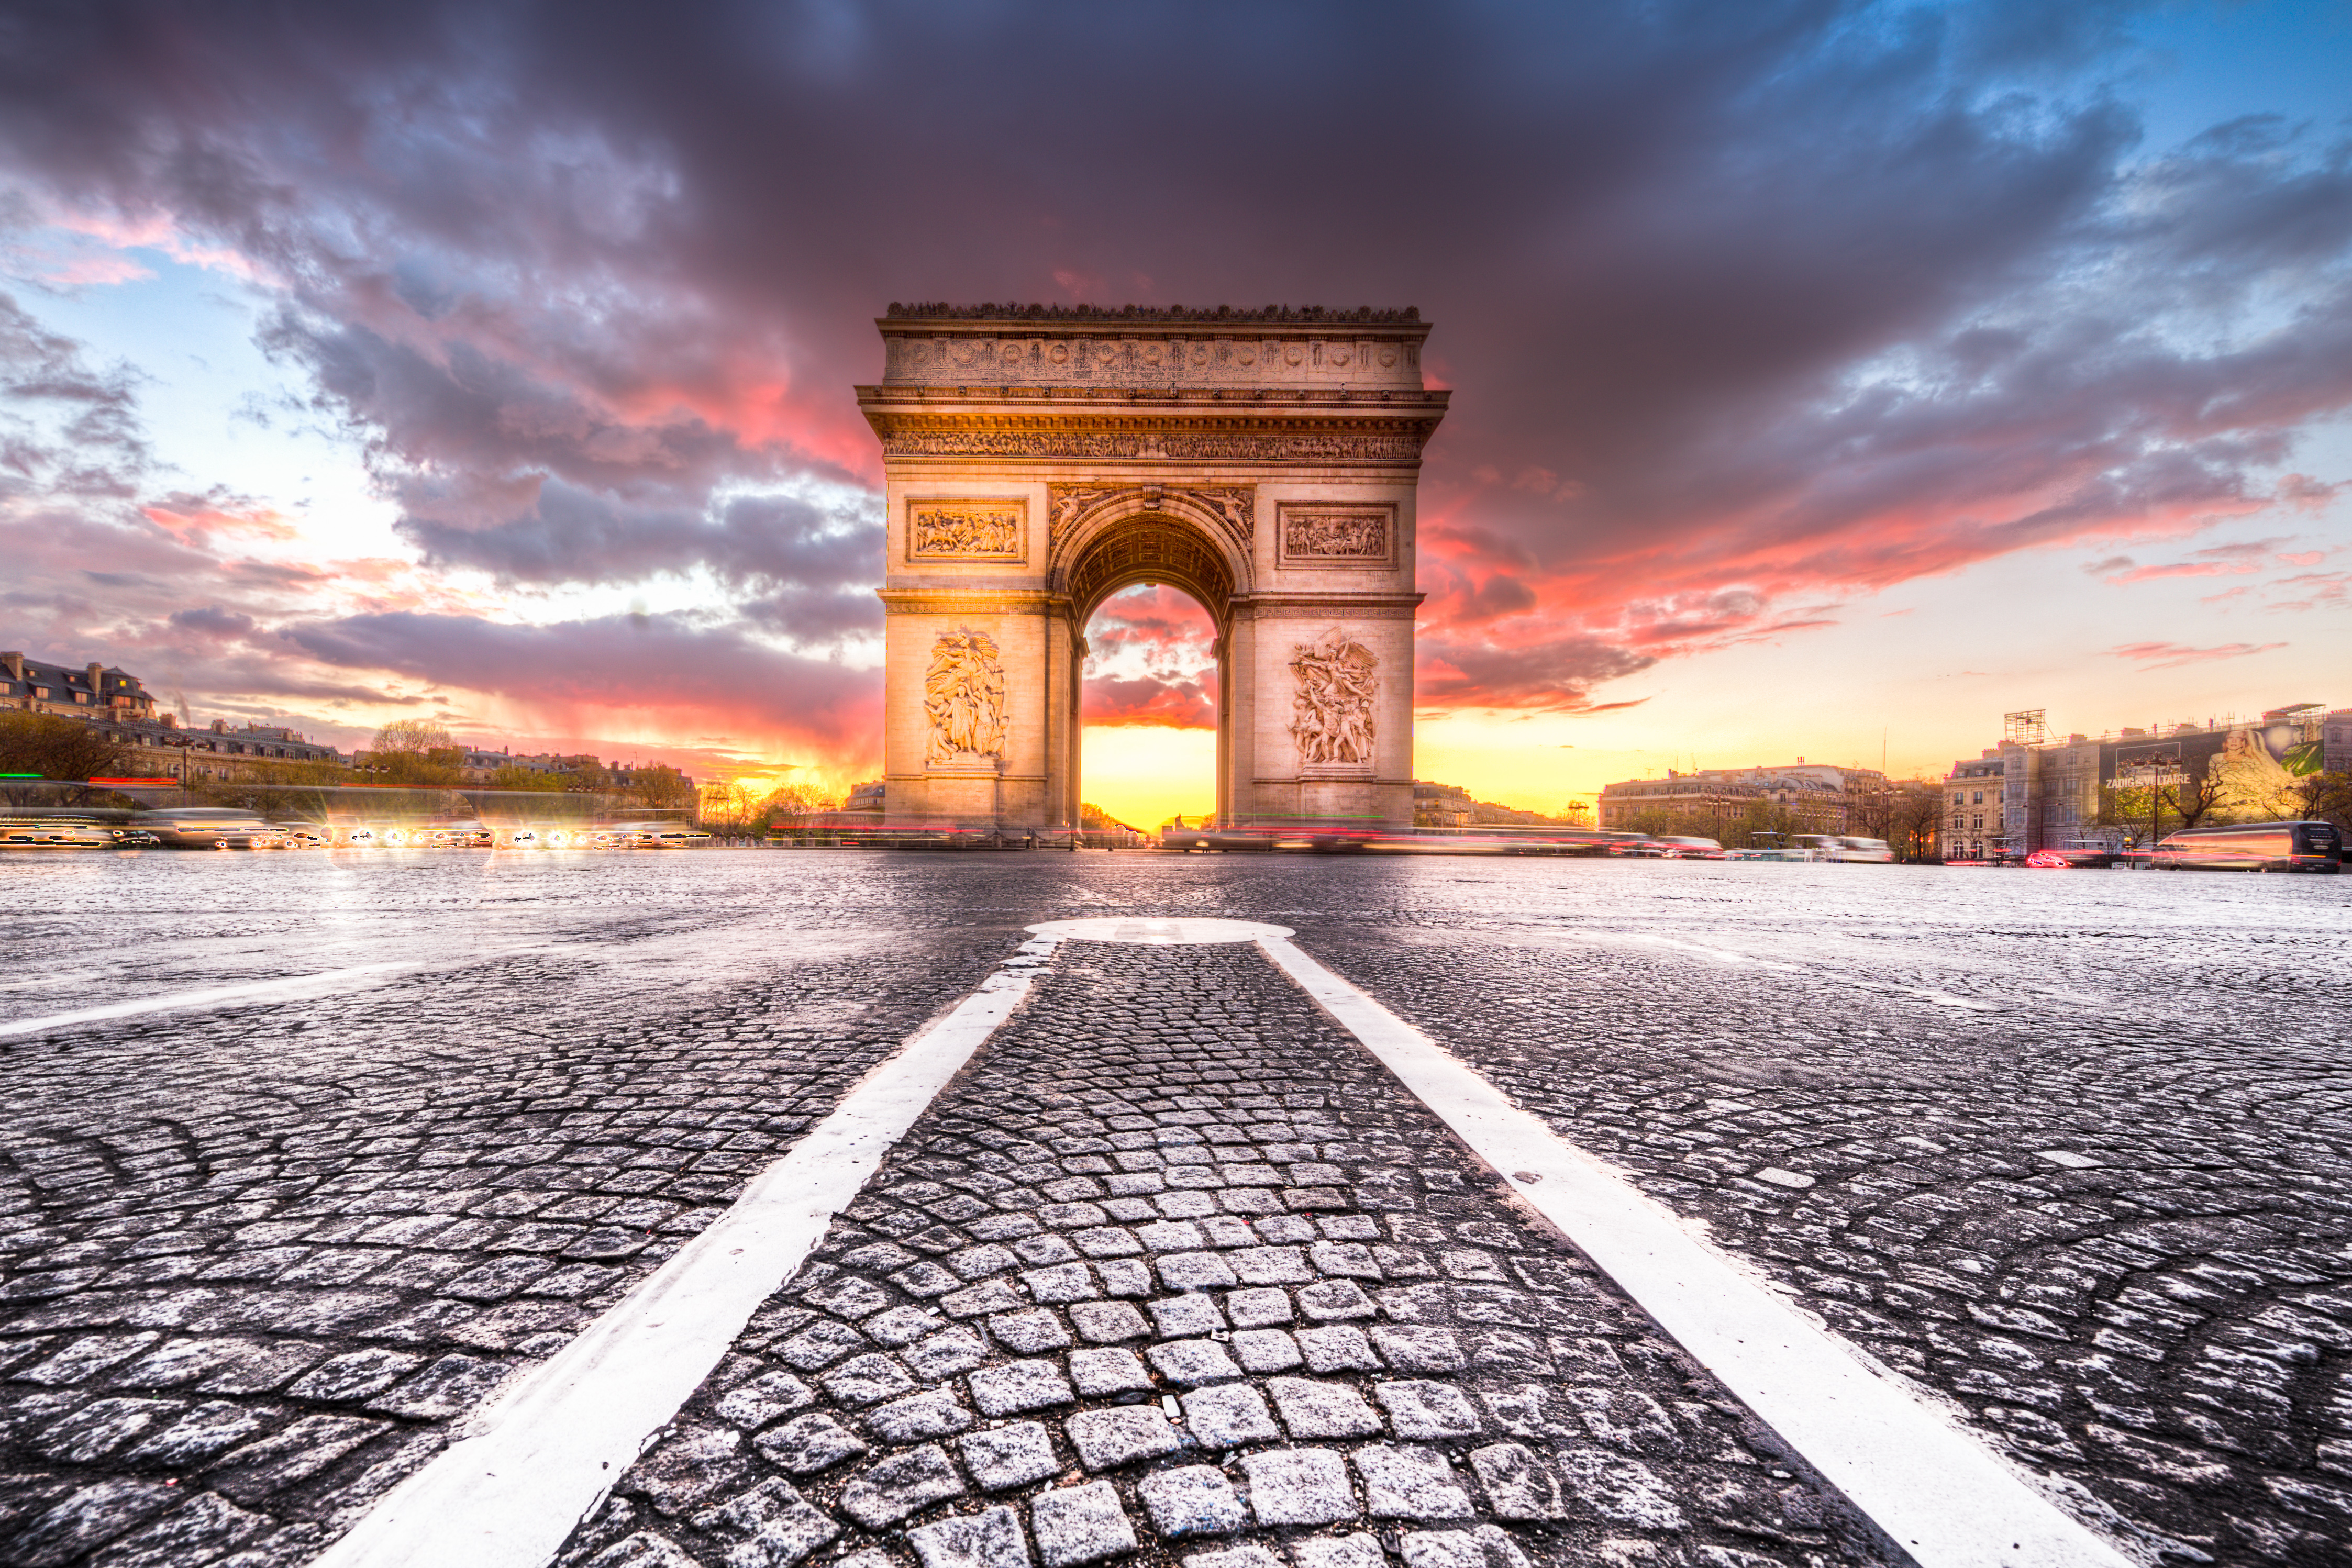 Arc De Triomphe Monument Paris France Sunset 4492x2995